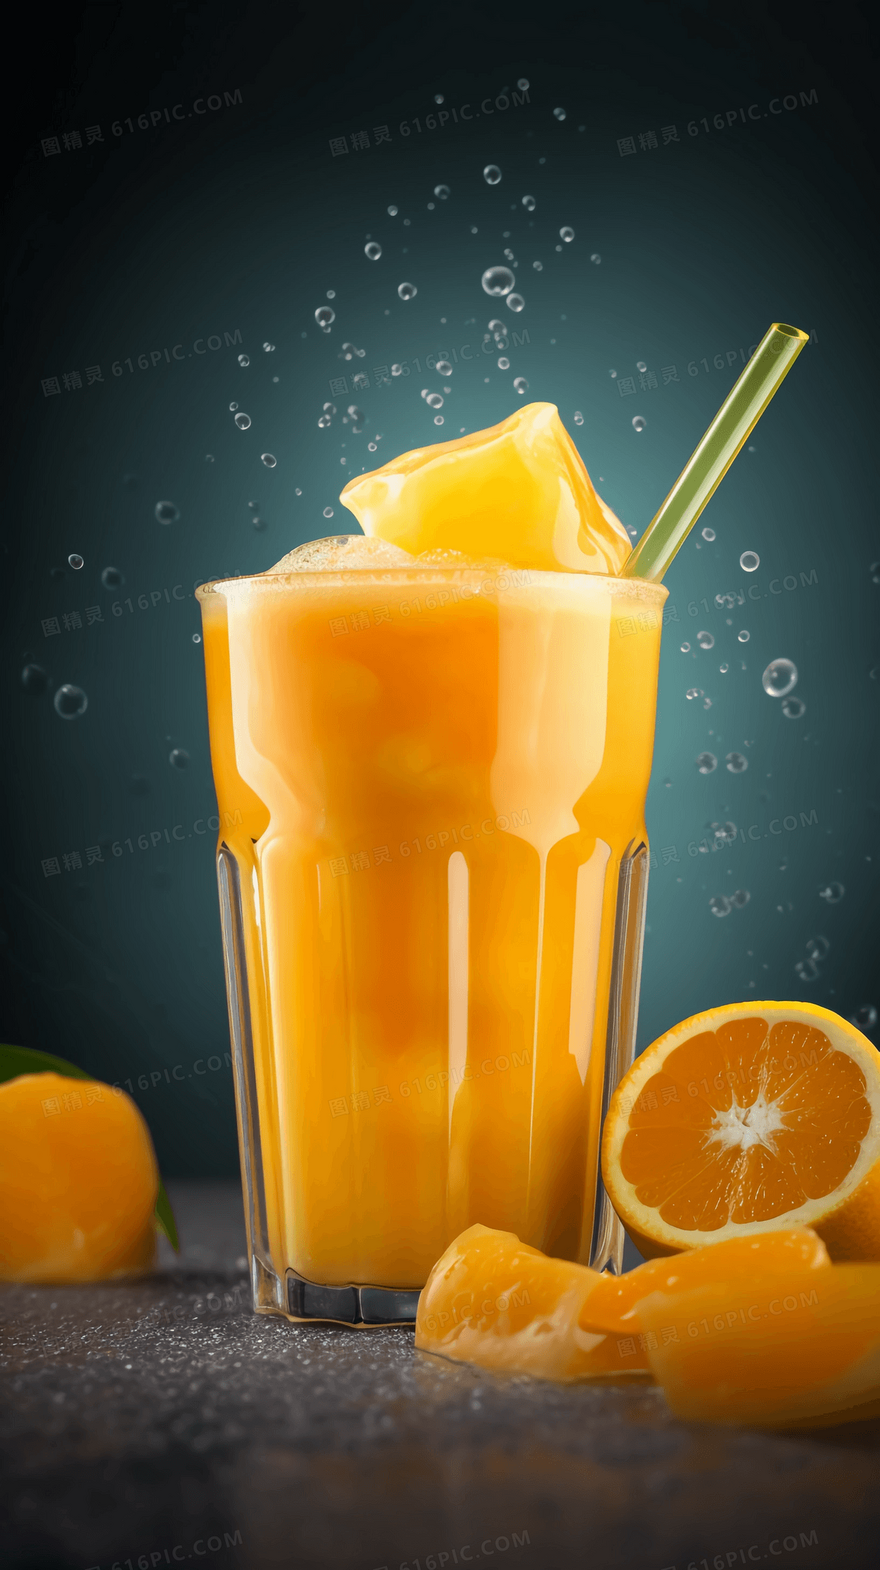 一杯加了冰块的冰爽鲜榨橙汁